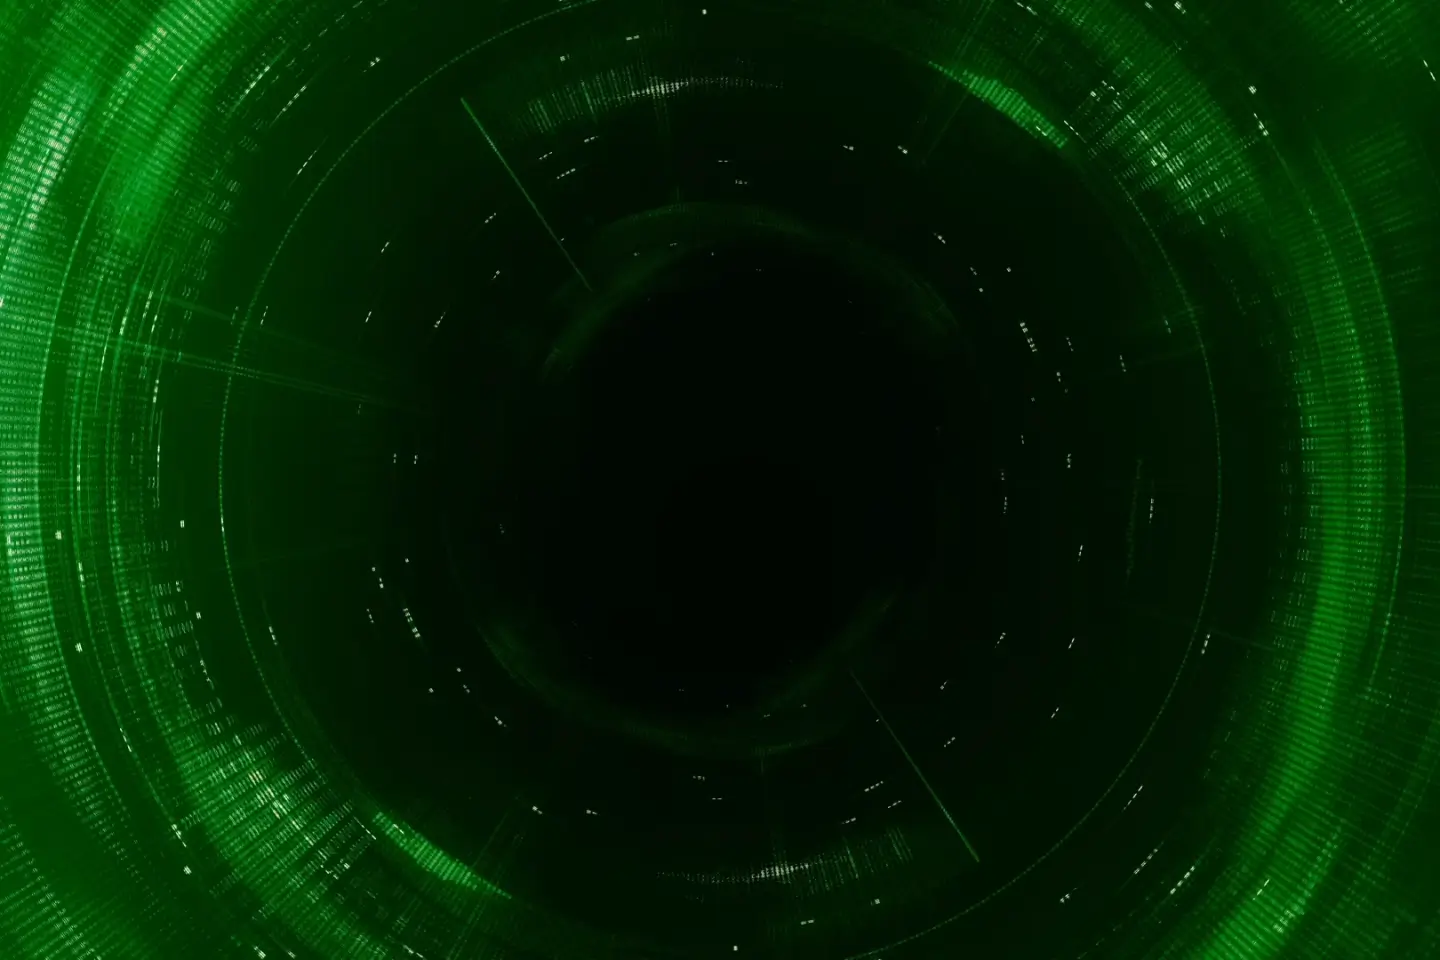 Imagem simulando um vórtice de energia em frente a um fundo preto.